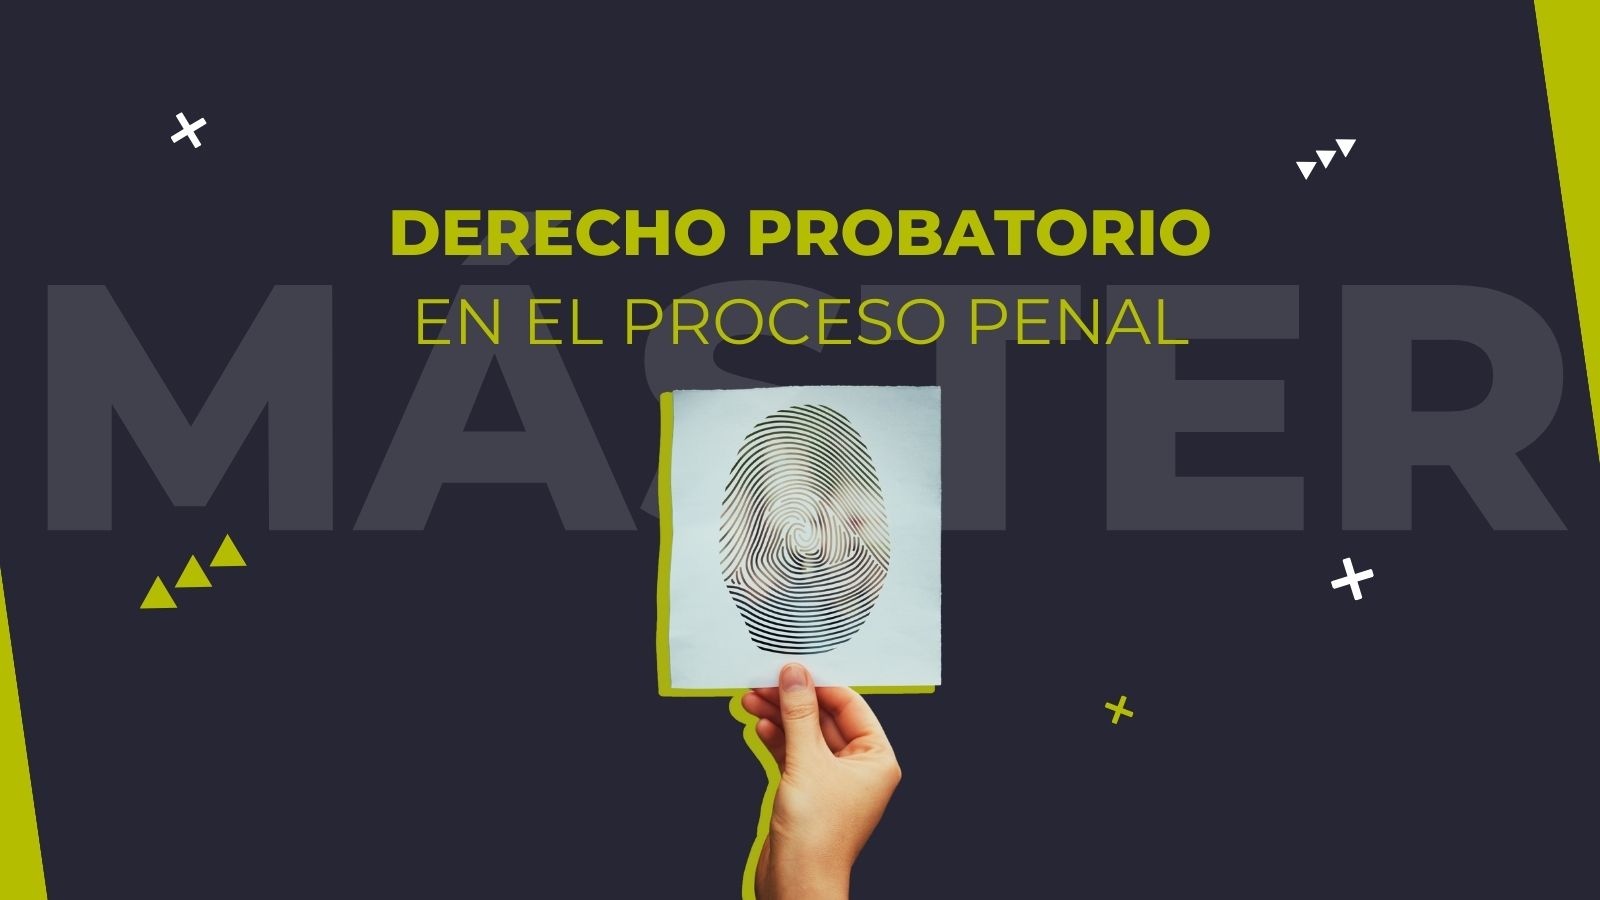 ✅ Máster en Derecho Probatorio en el Proceso Penal (4ª edición)